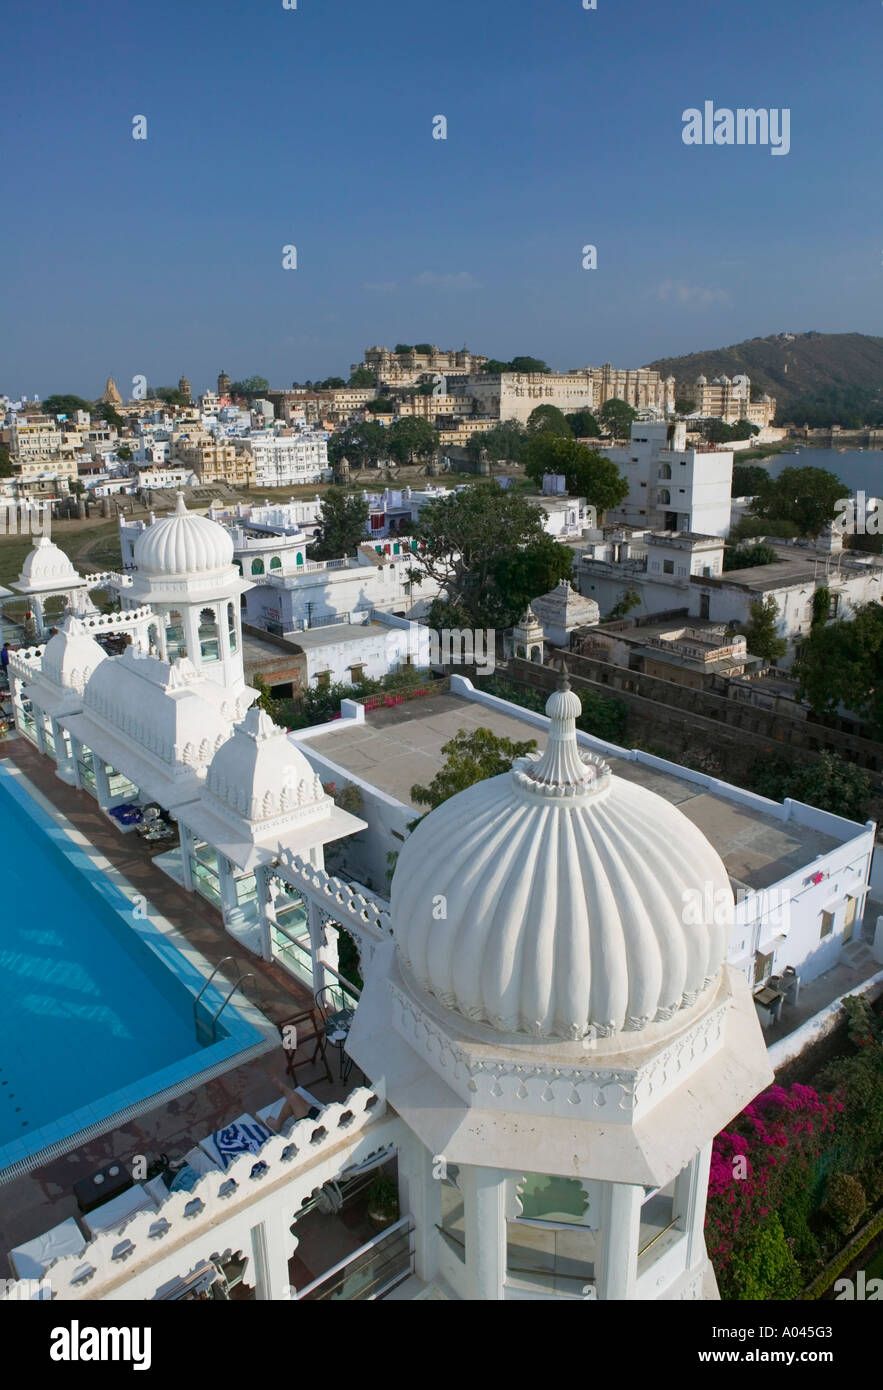 City Palace from Udai Kothi Hotel Roof, Udaipur, Rajasthan, India Stock Photo